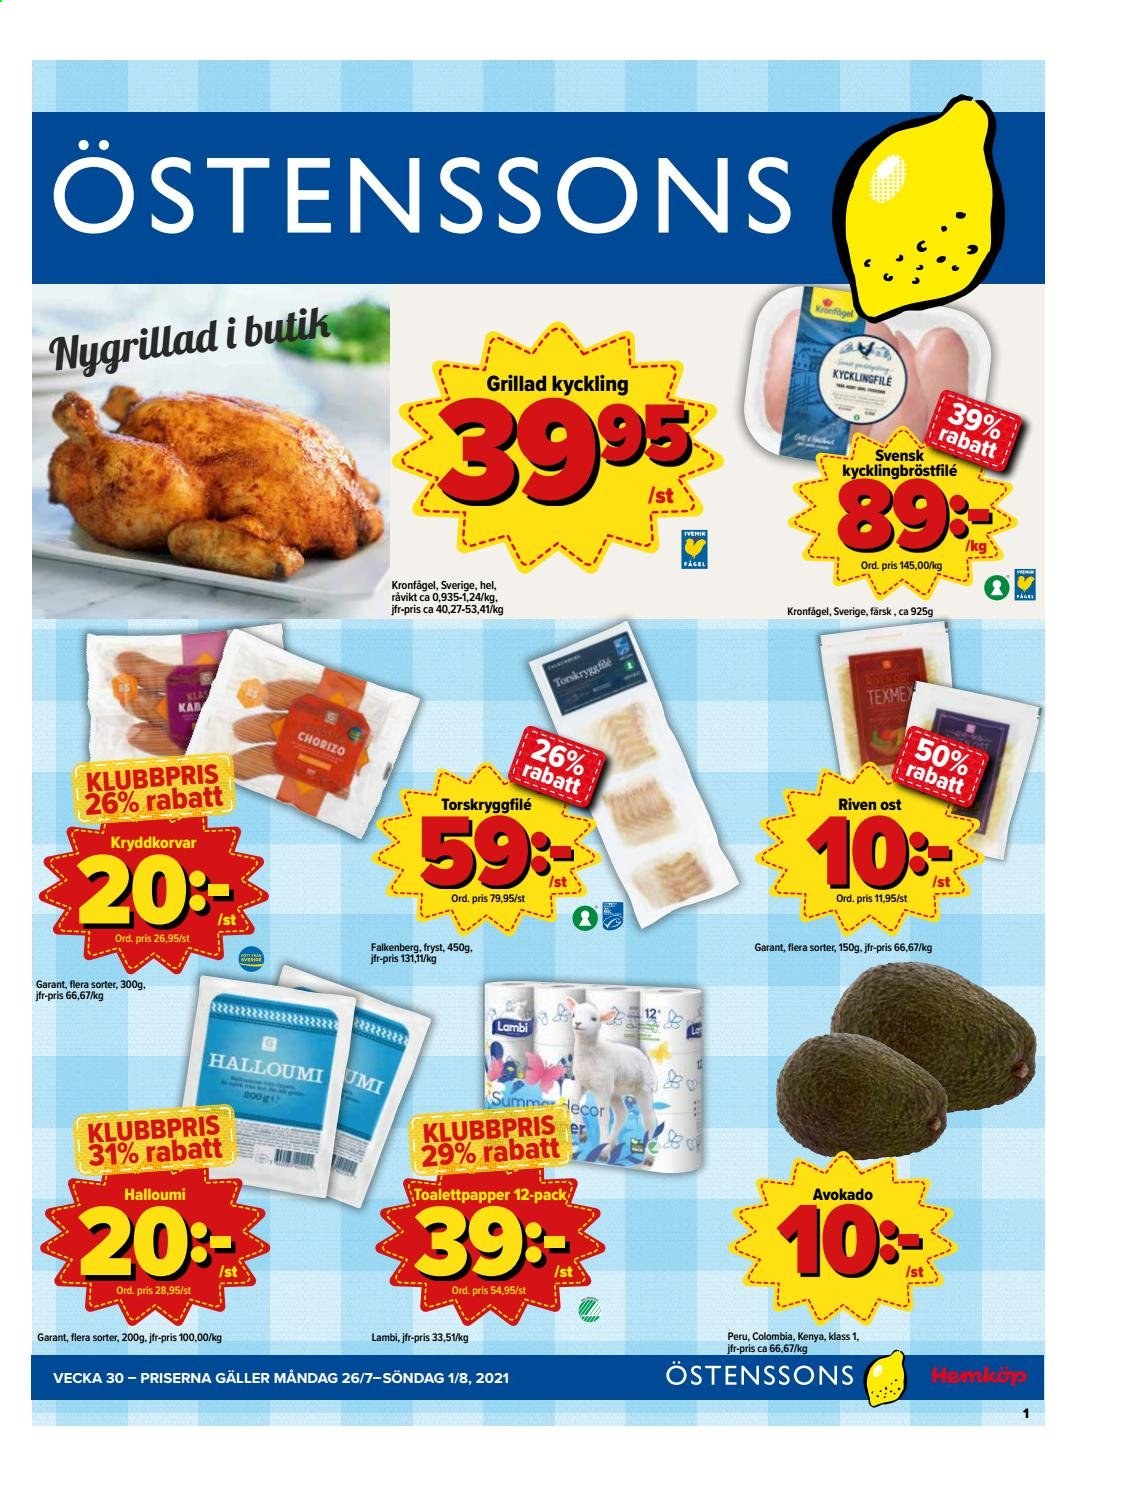 thumbnail - Östenssons reklamblad - 26/7 2021 - 1/8 2021 - varor från reklamblad - kyckling, kycklingbröstfilé, grillad kyckling, avokado, chorizo, ost, halloumi, toalettpapper. Sida 1.